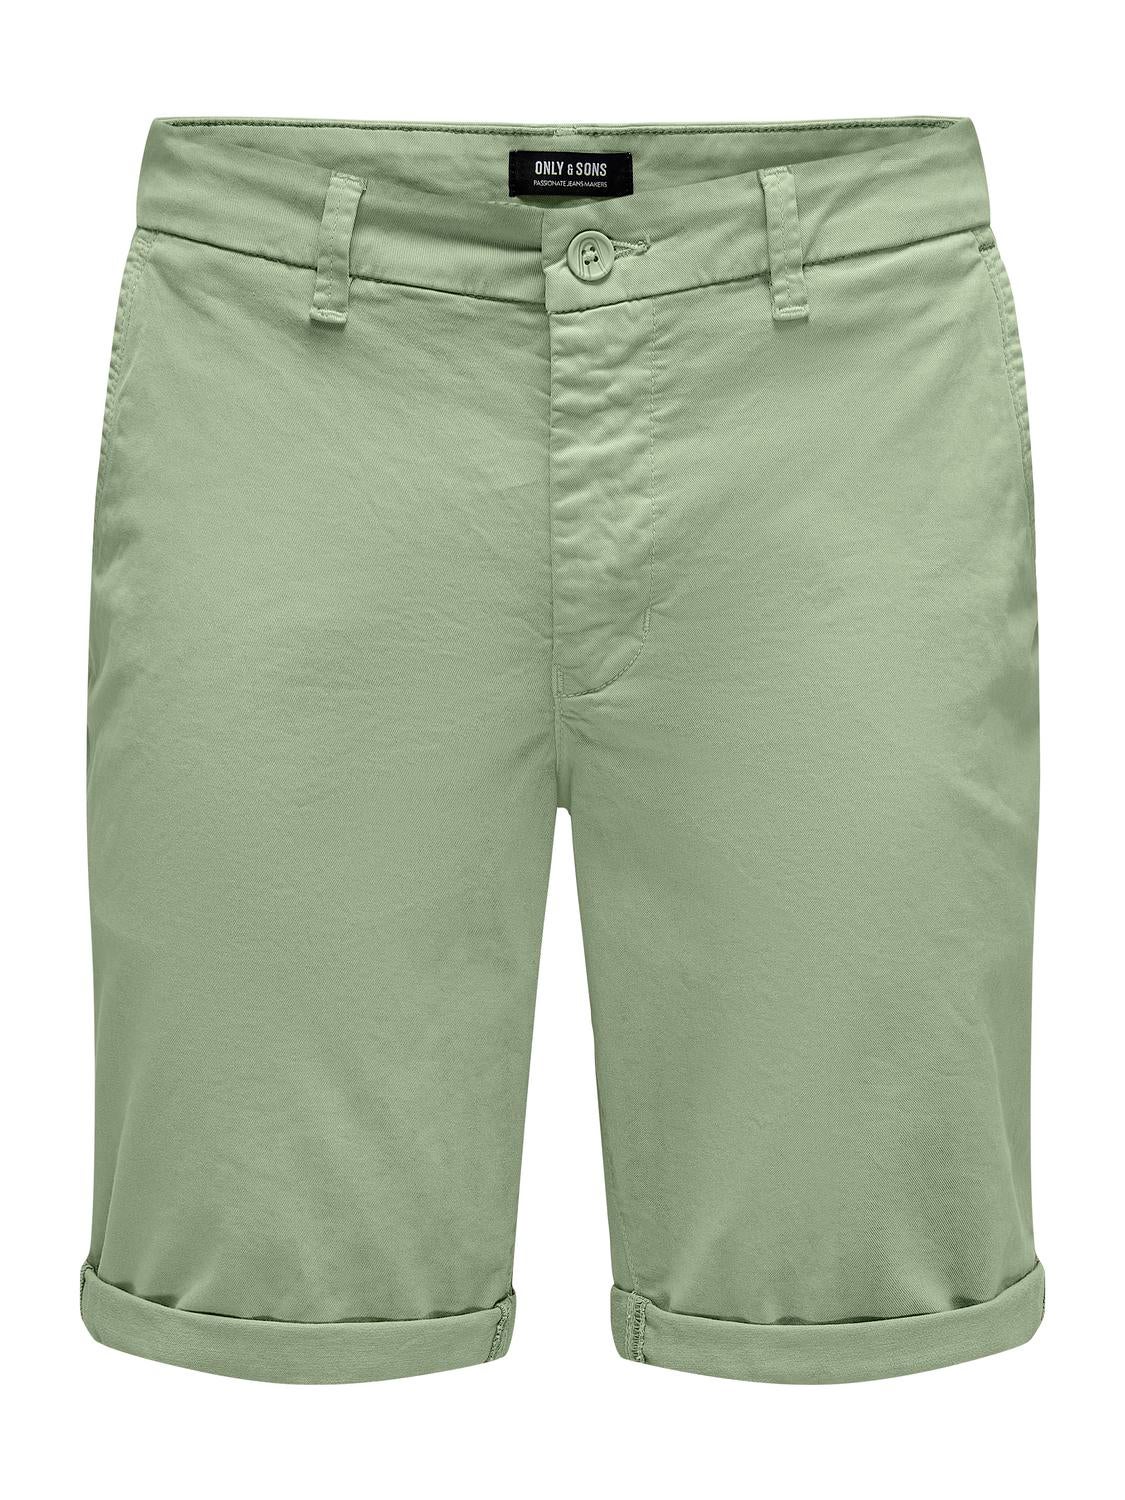 Regular Fit Shorts | Medium Green | ONLY & SONS®